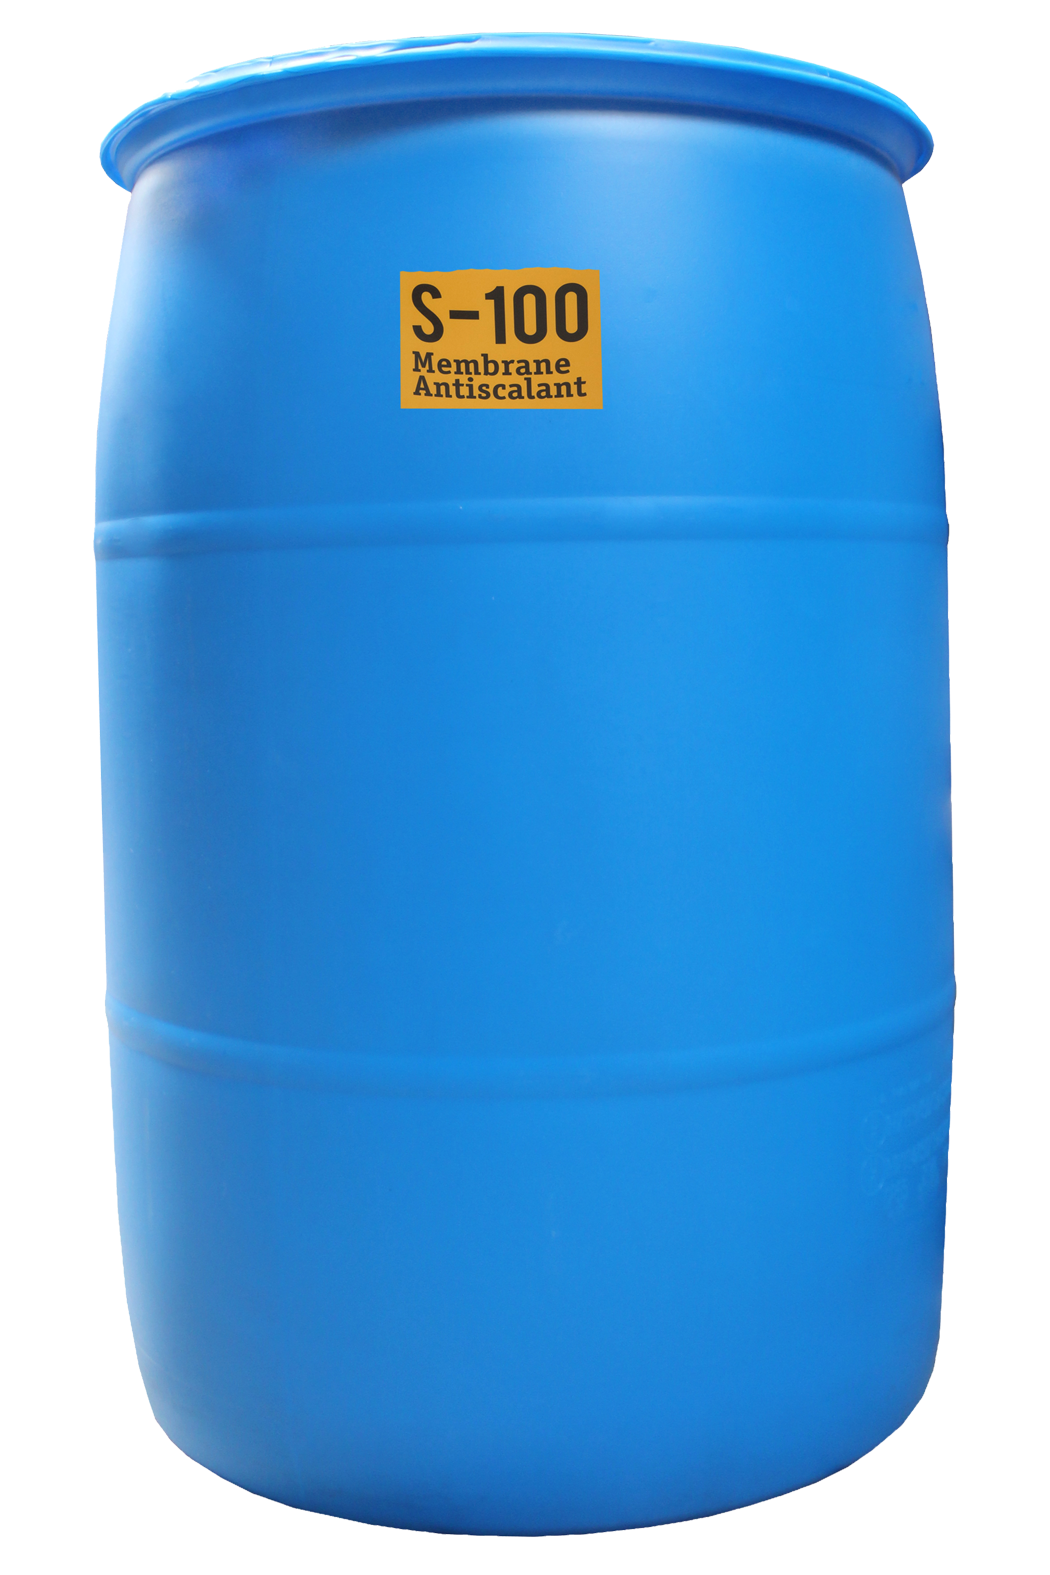 55 Gallon Drum of S-100 AntiScalant